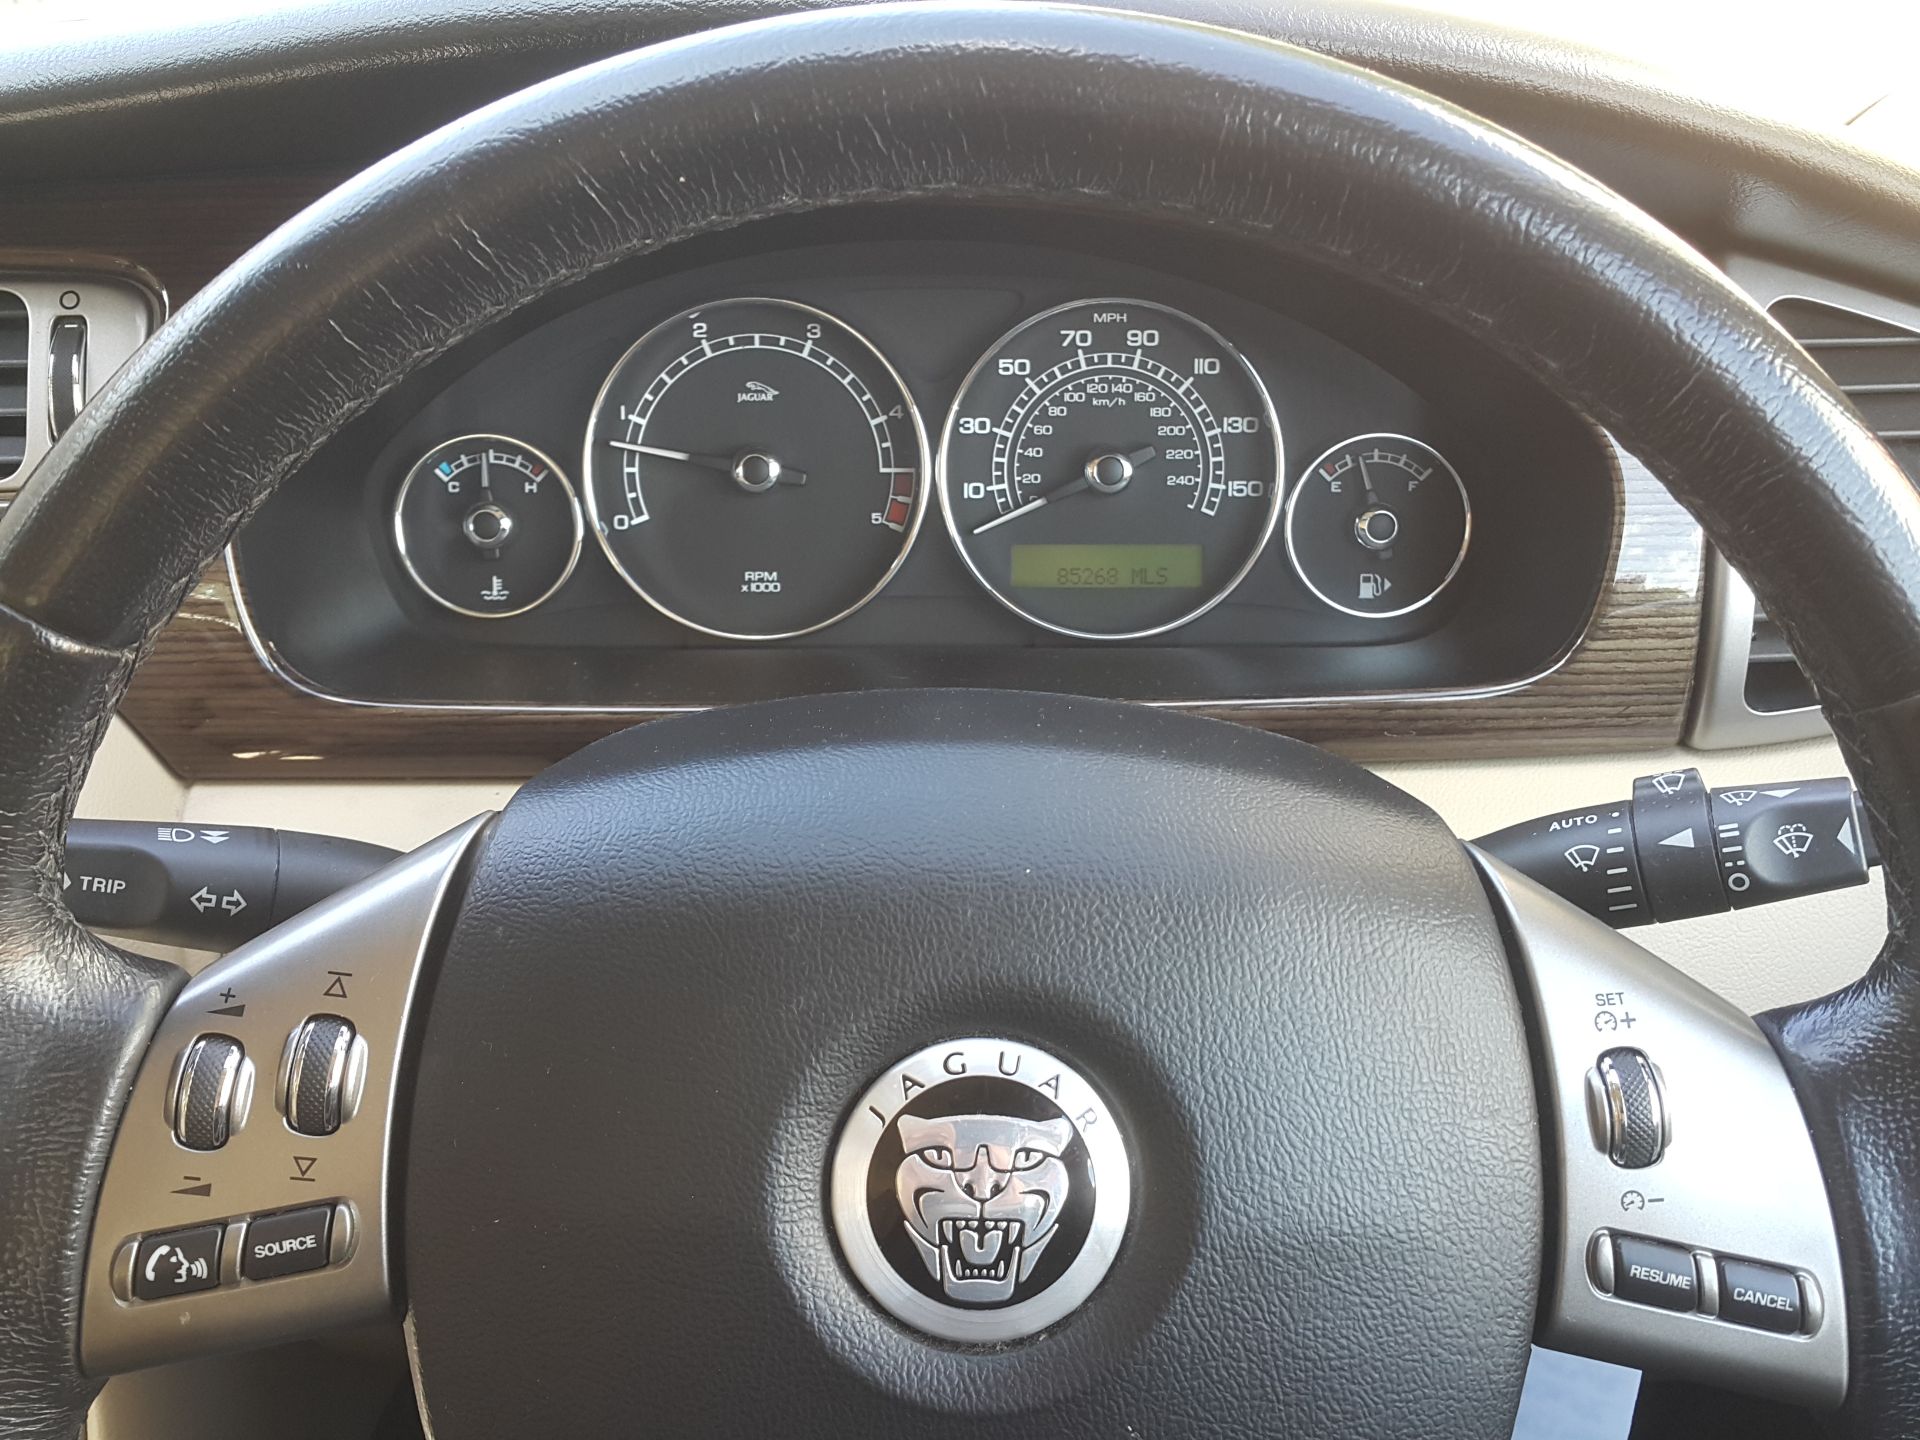 Jaguar X Type SE - Saloon, Automatic, Diesel, 85000 Miles, MOT'd Until May 2018 - Buyers Premium 7% - Image 10 of 19